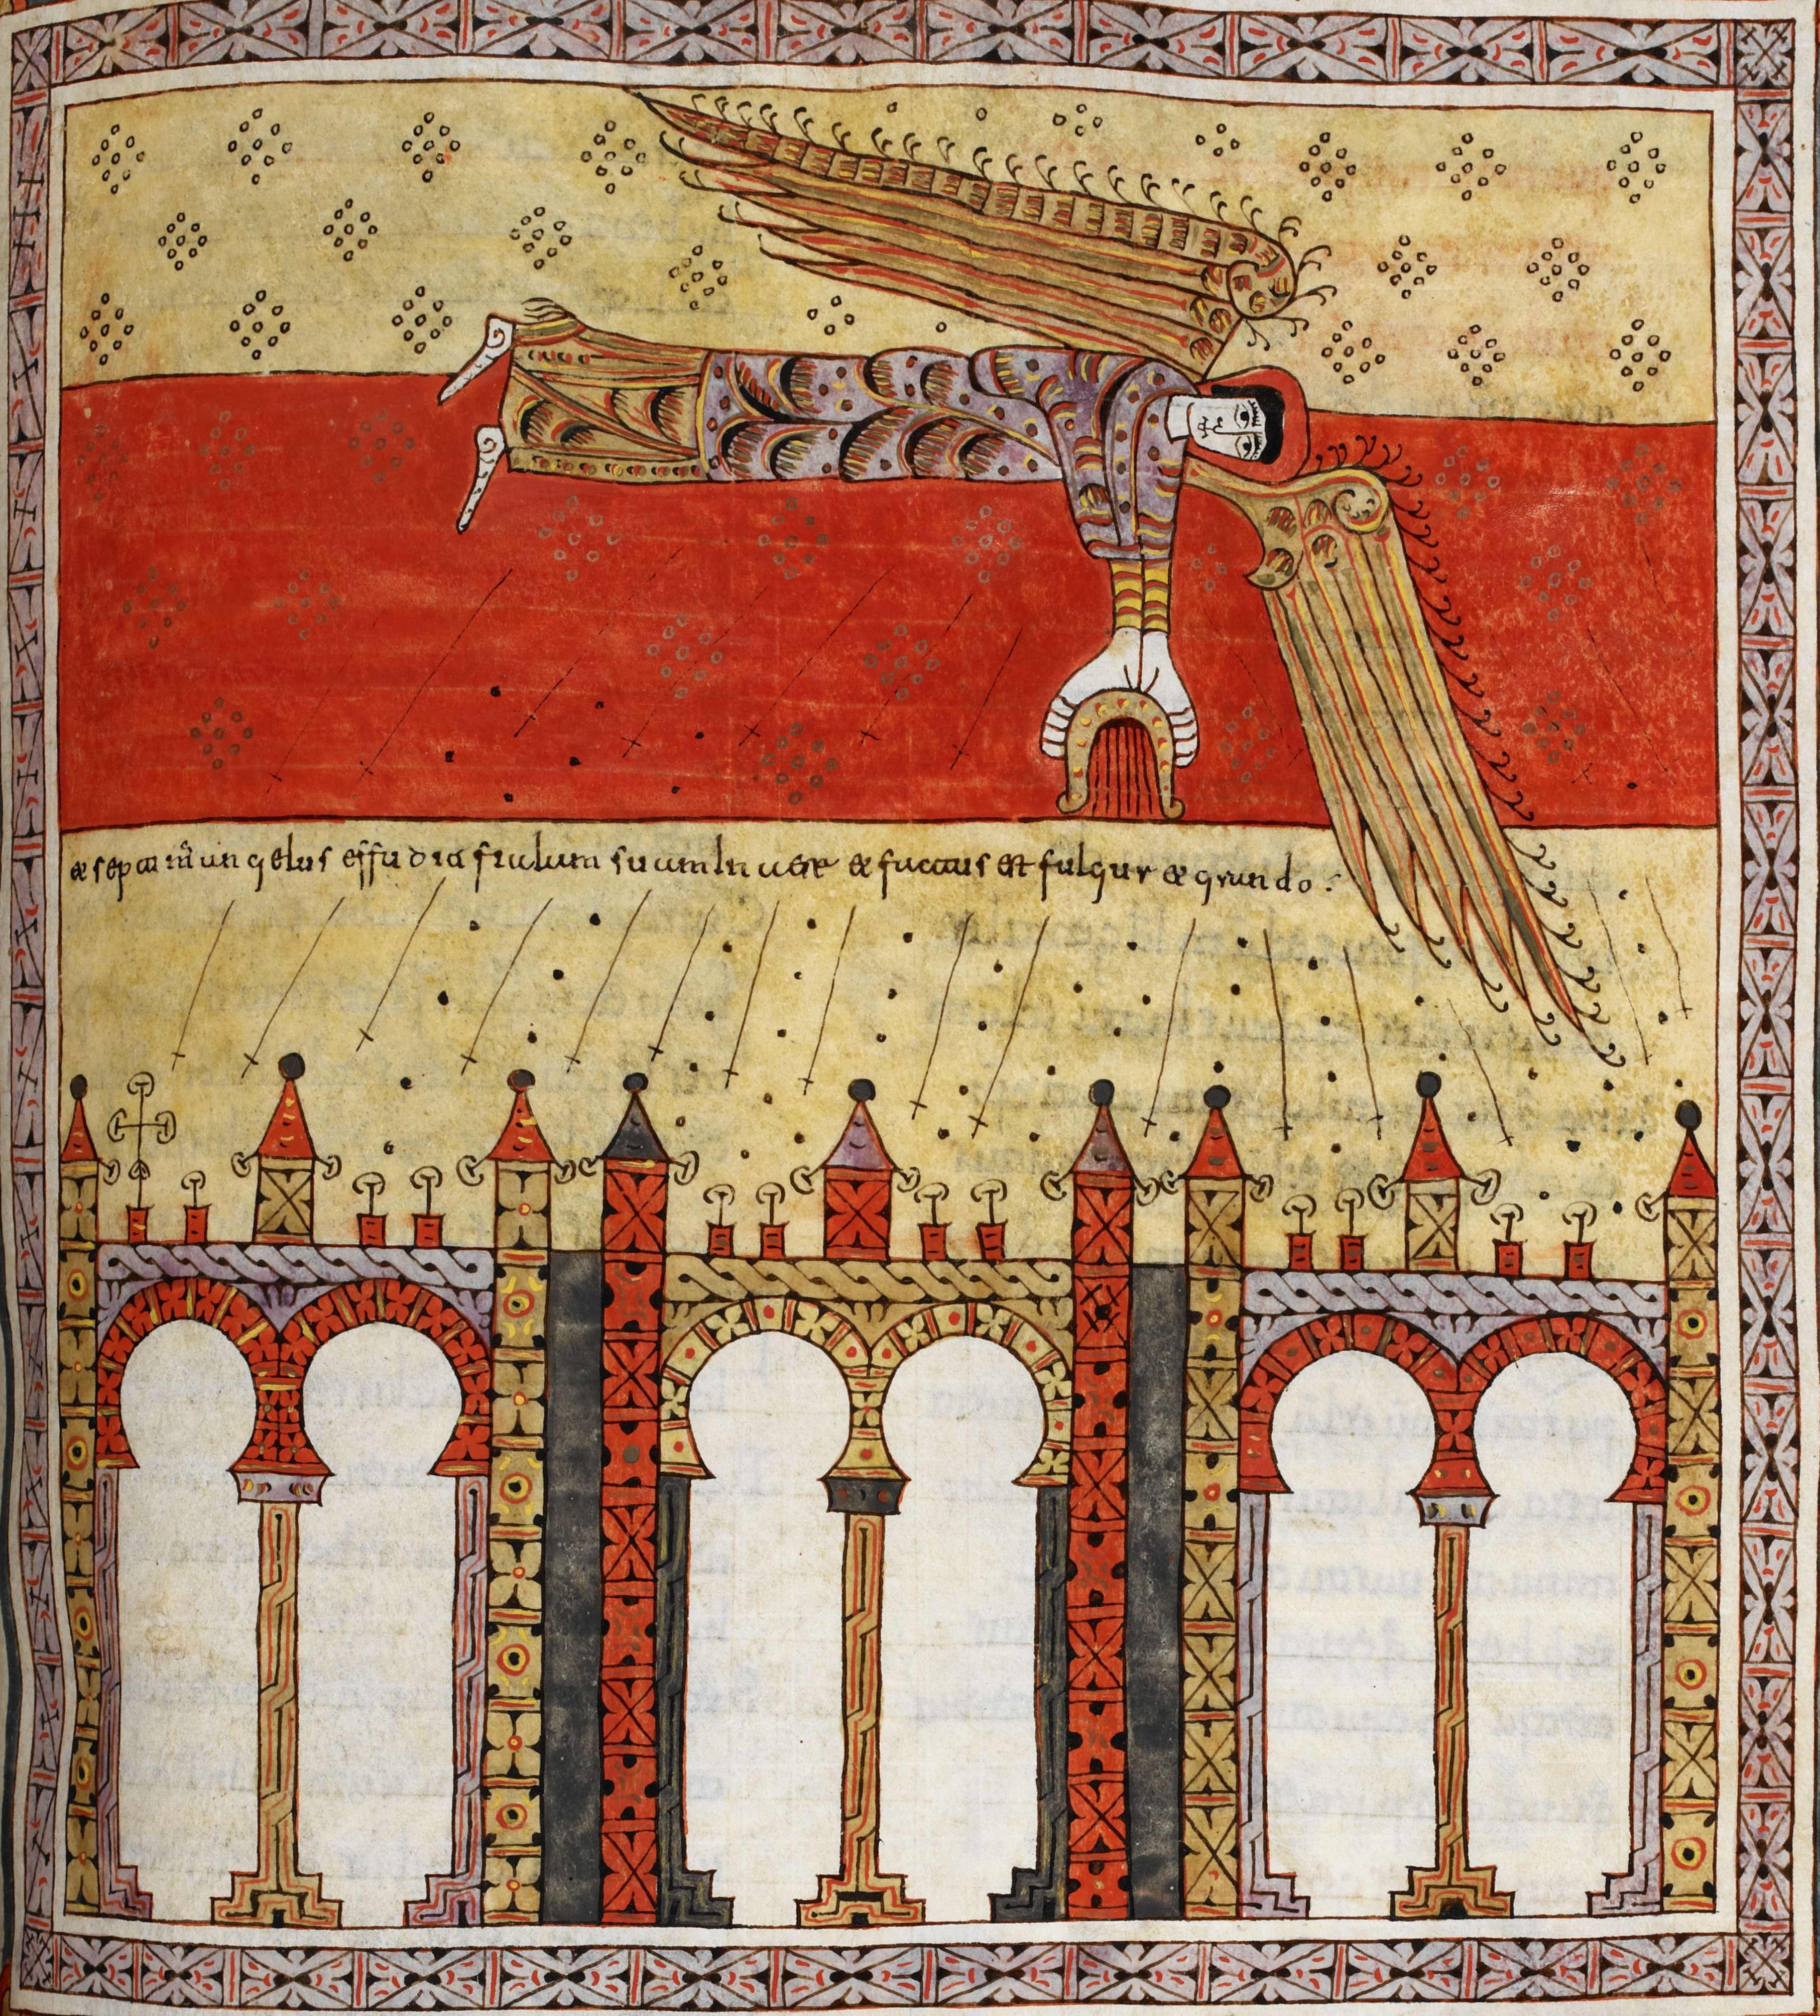 Beatus de Silos, folio 181r – La septième coupe répandue dans l’air, fléaux de tonnerres, de grêle et tremblement de terre ; la Grande Cité se scinde en trois parties (Ap 16, 17-21).